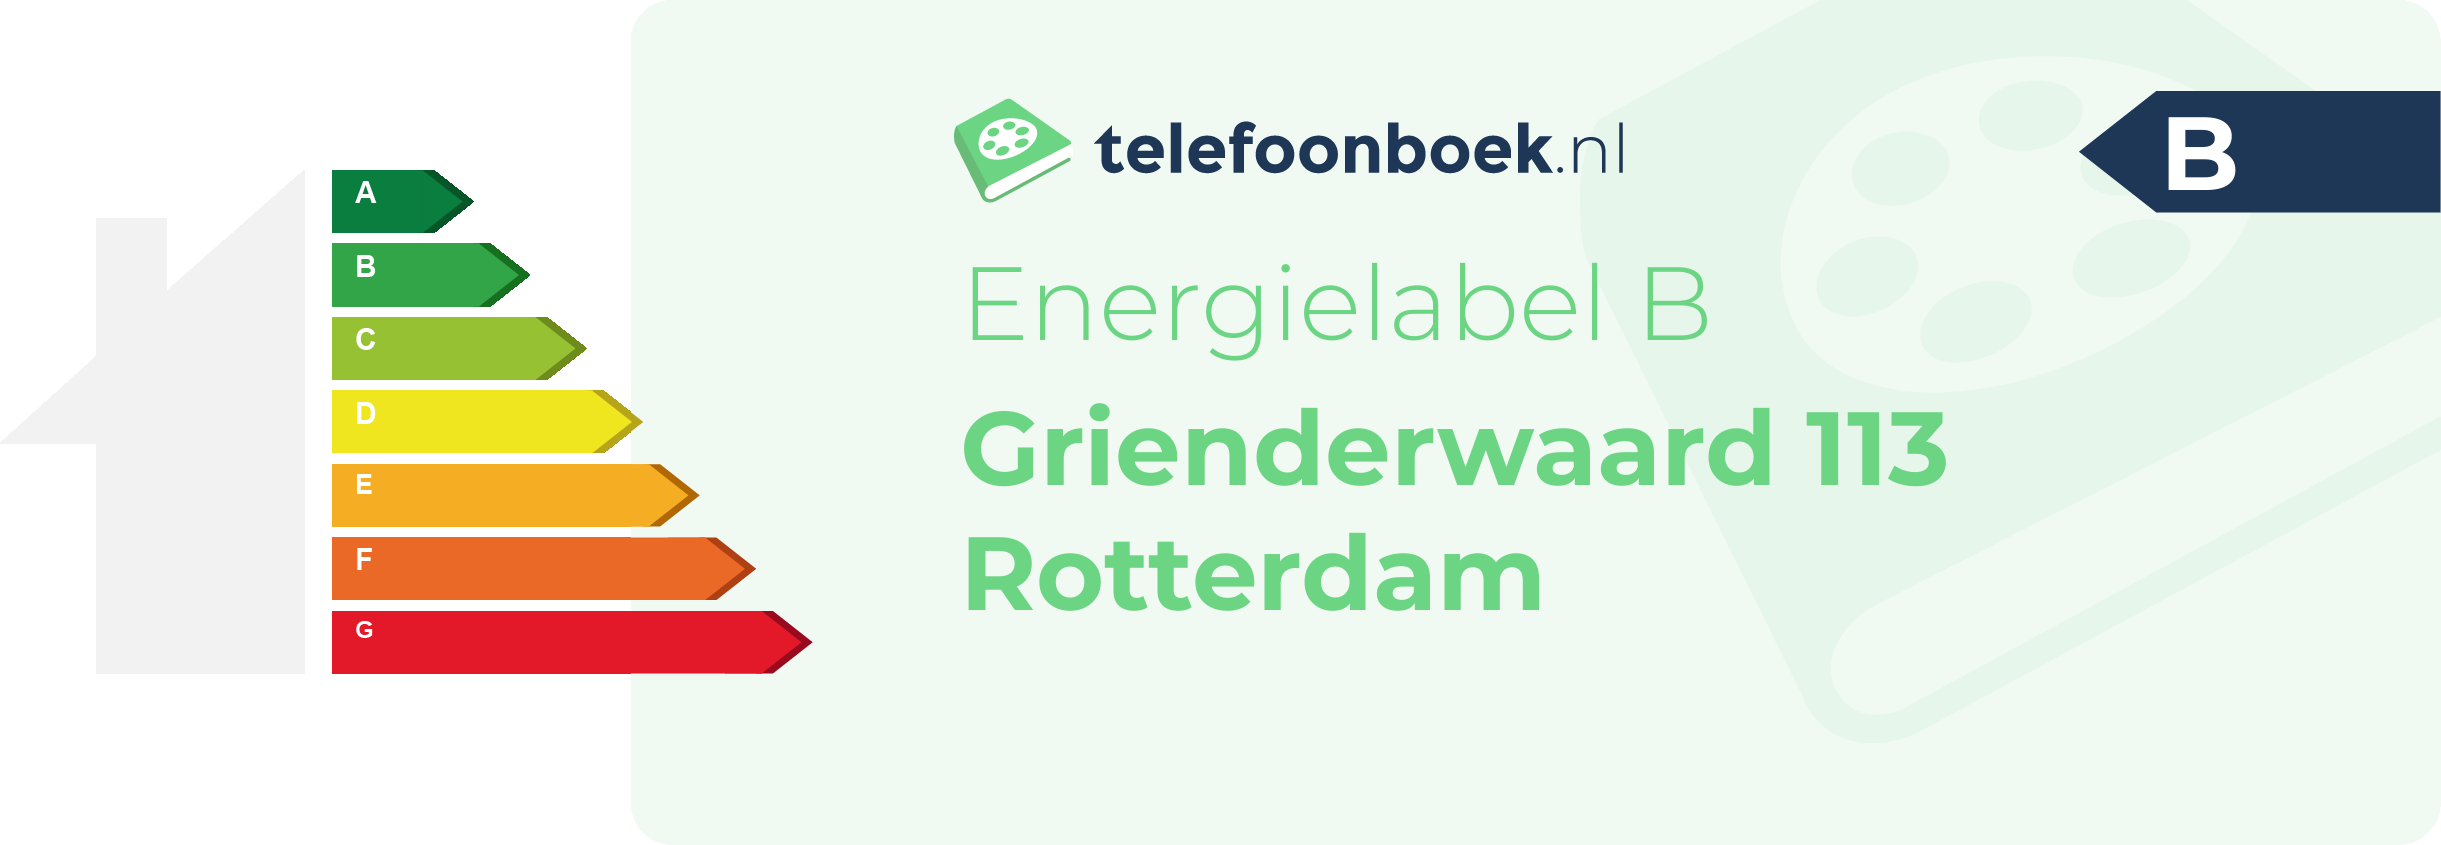 Energielabel Grienderwaard 113 Rotterdam